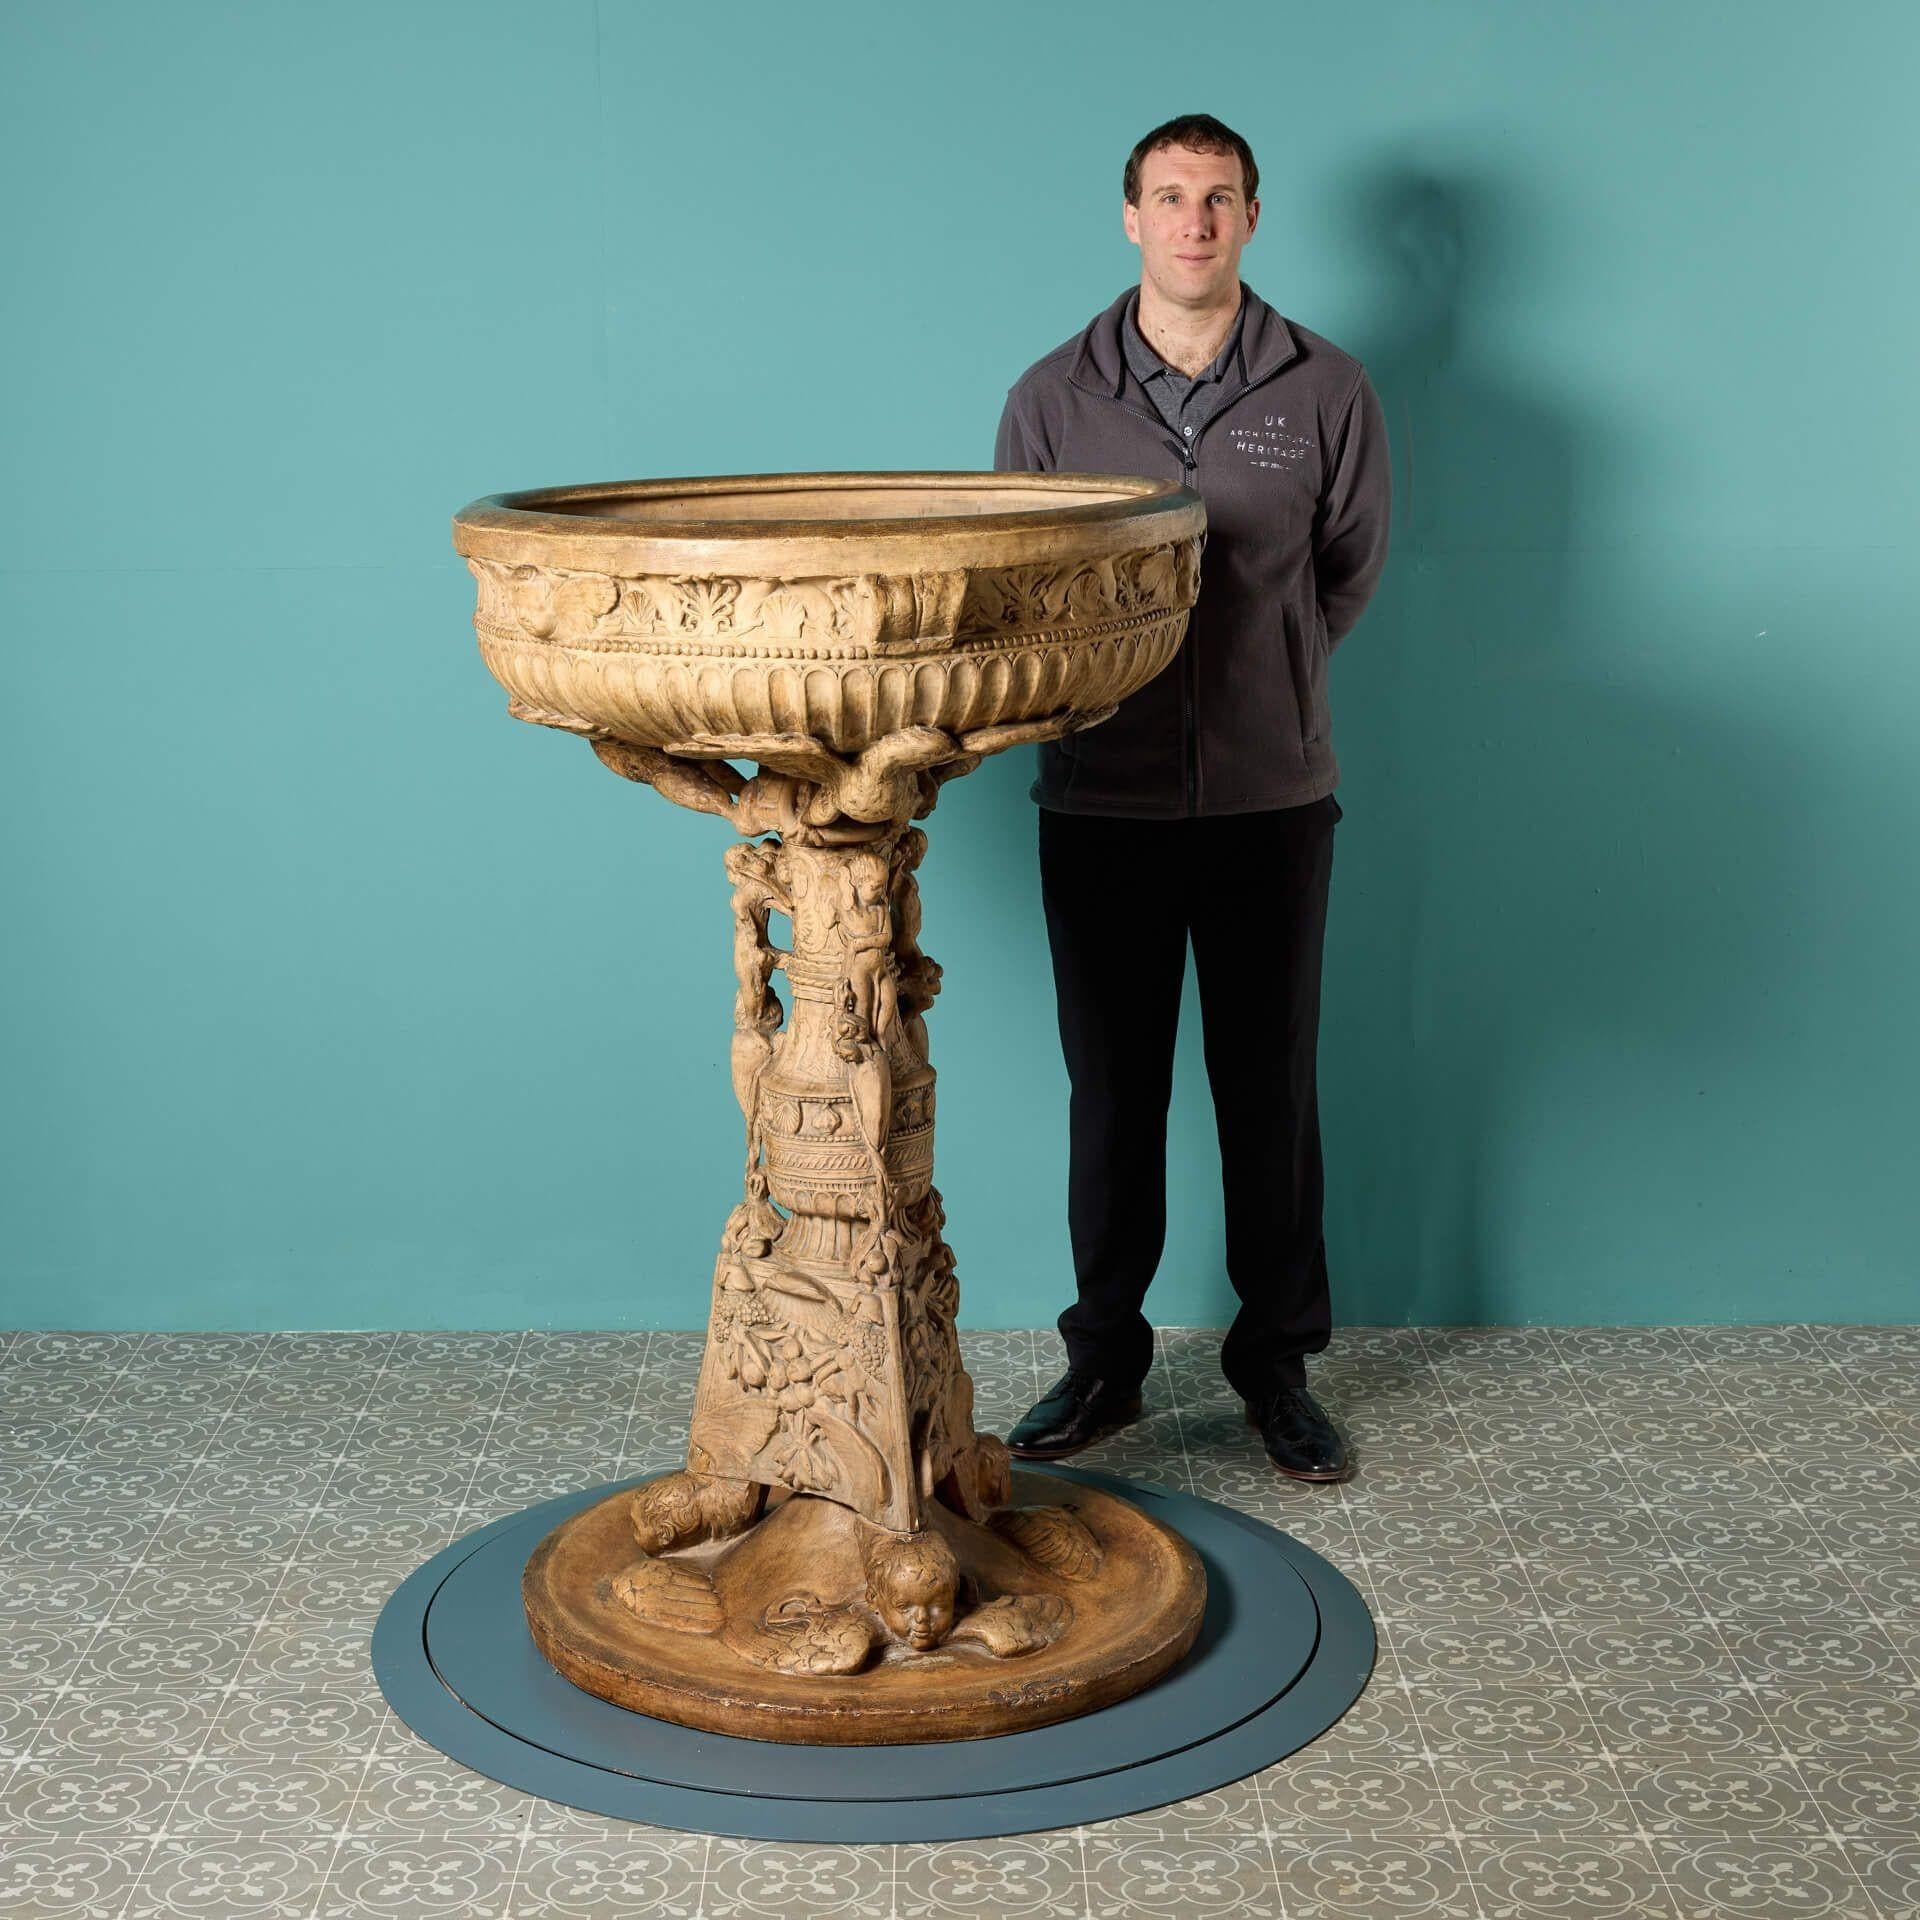 Une spectaculaire fontaine d'eau en terre cuite italienne antique de grande taille d'après l'antique. Ce bénitier détaillé d'une taille impressionnante est une copie de musée du bassin d'eau bénite original de la cathédrale de Sienne, en Italie,